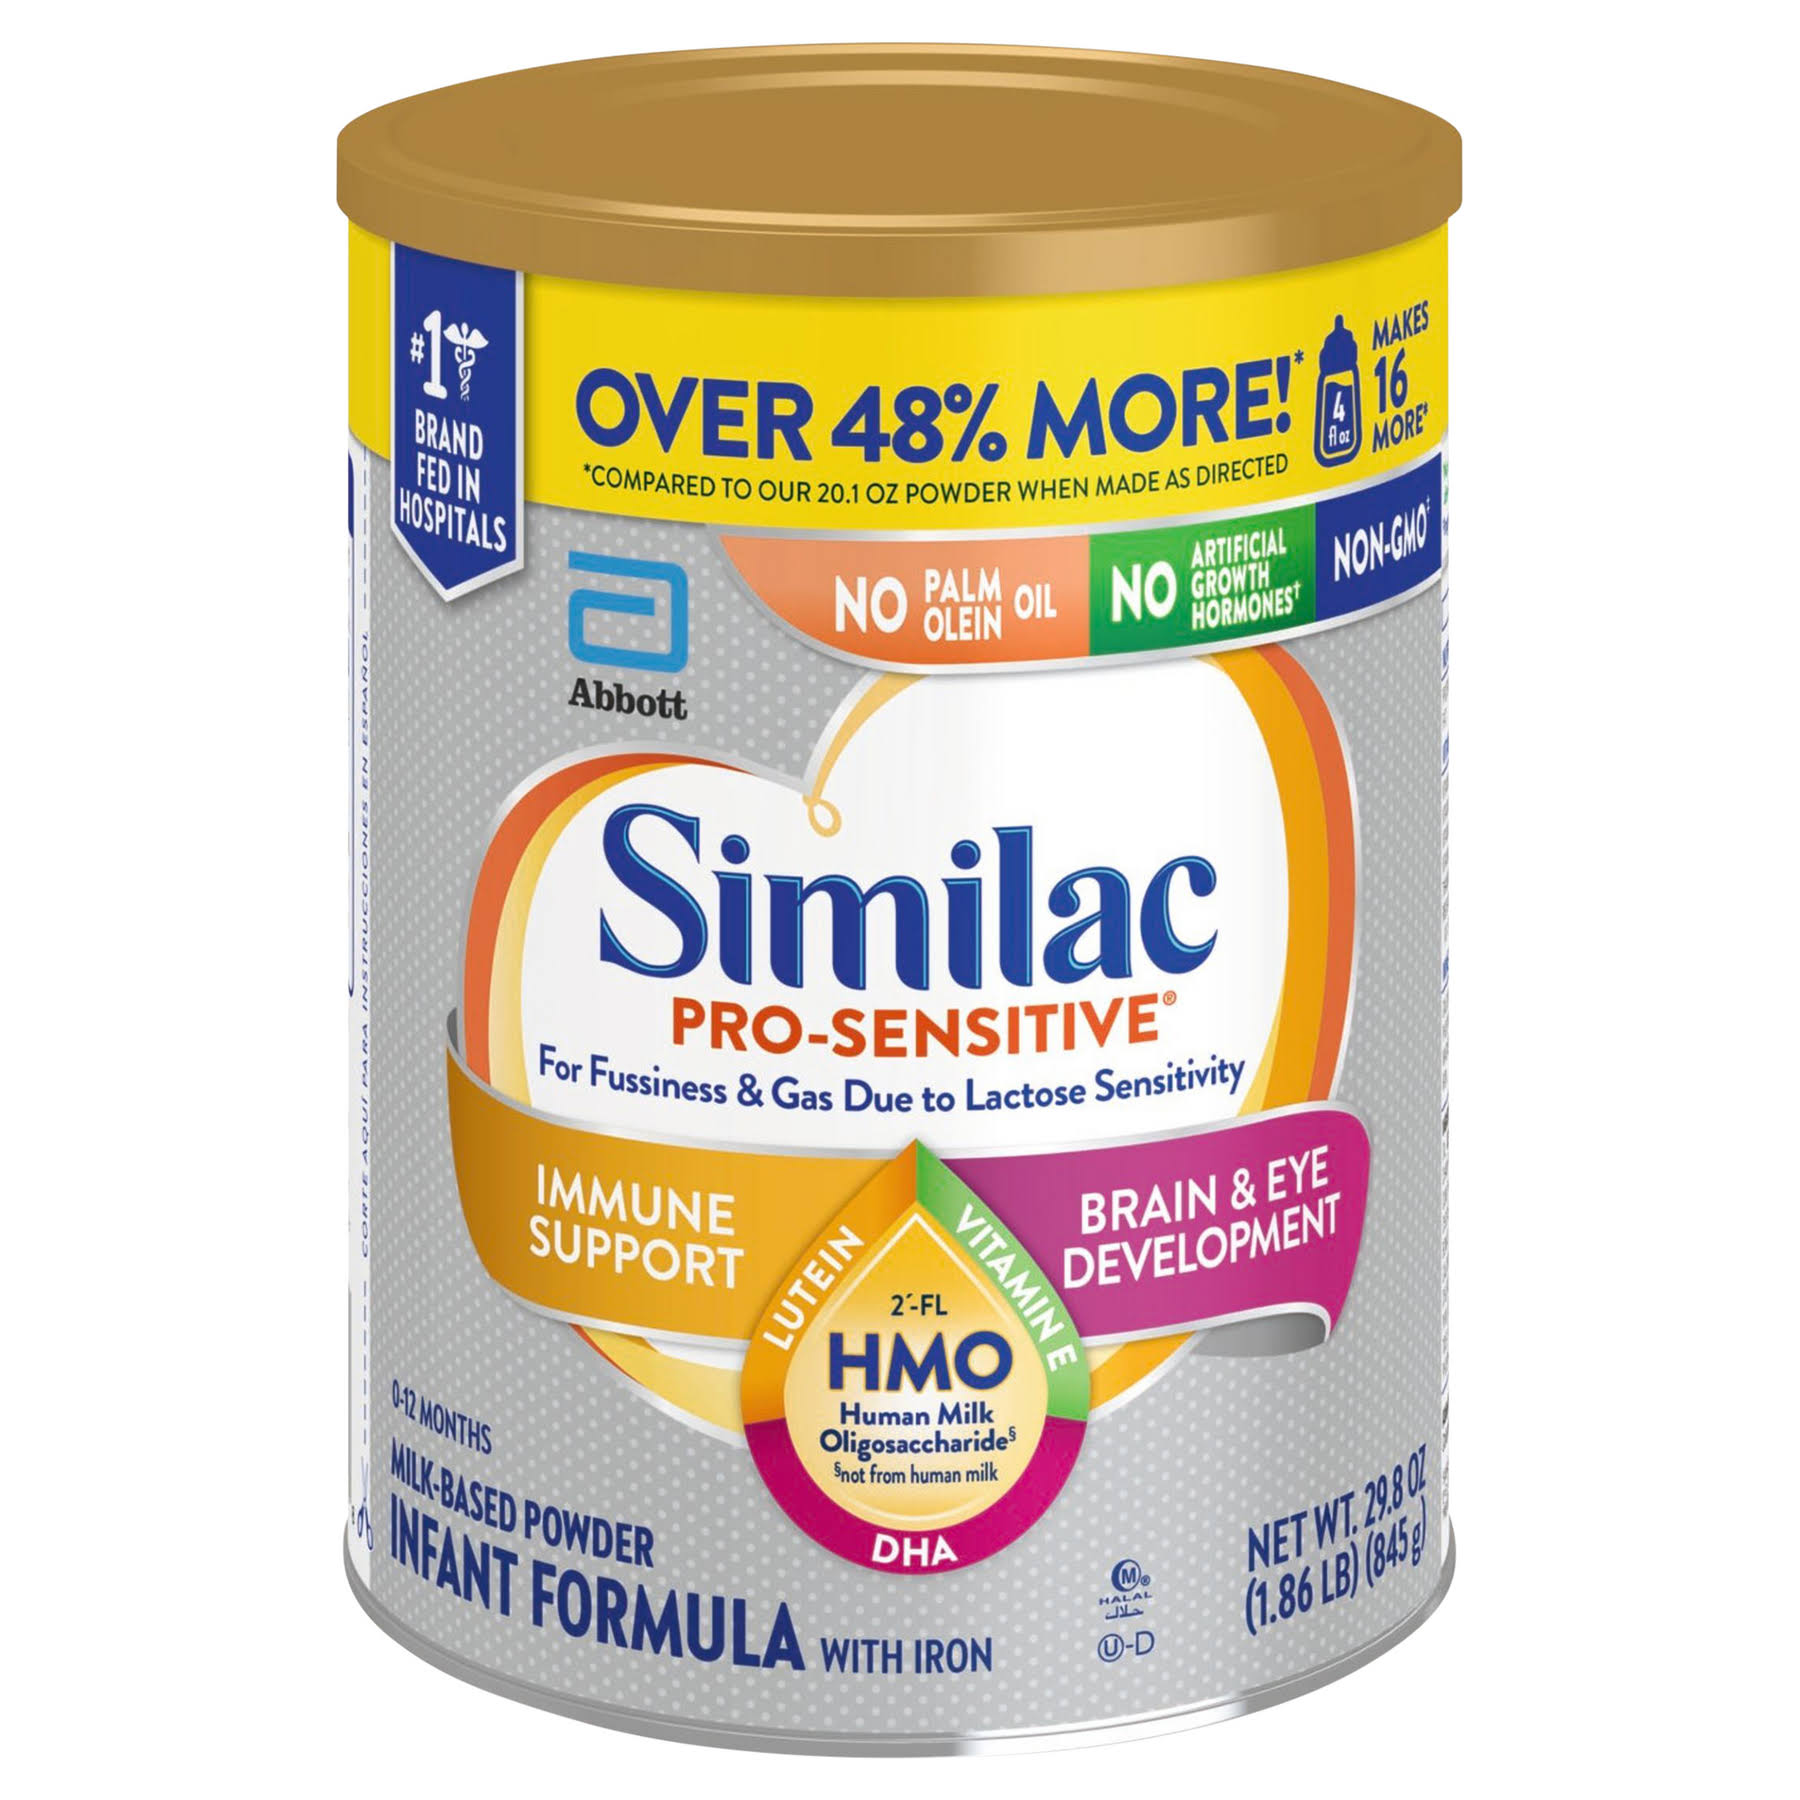 Similac Pro-Sensitive Milk-Based Powder Infant Formula with Iron 29.8 oz Can